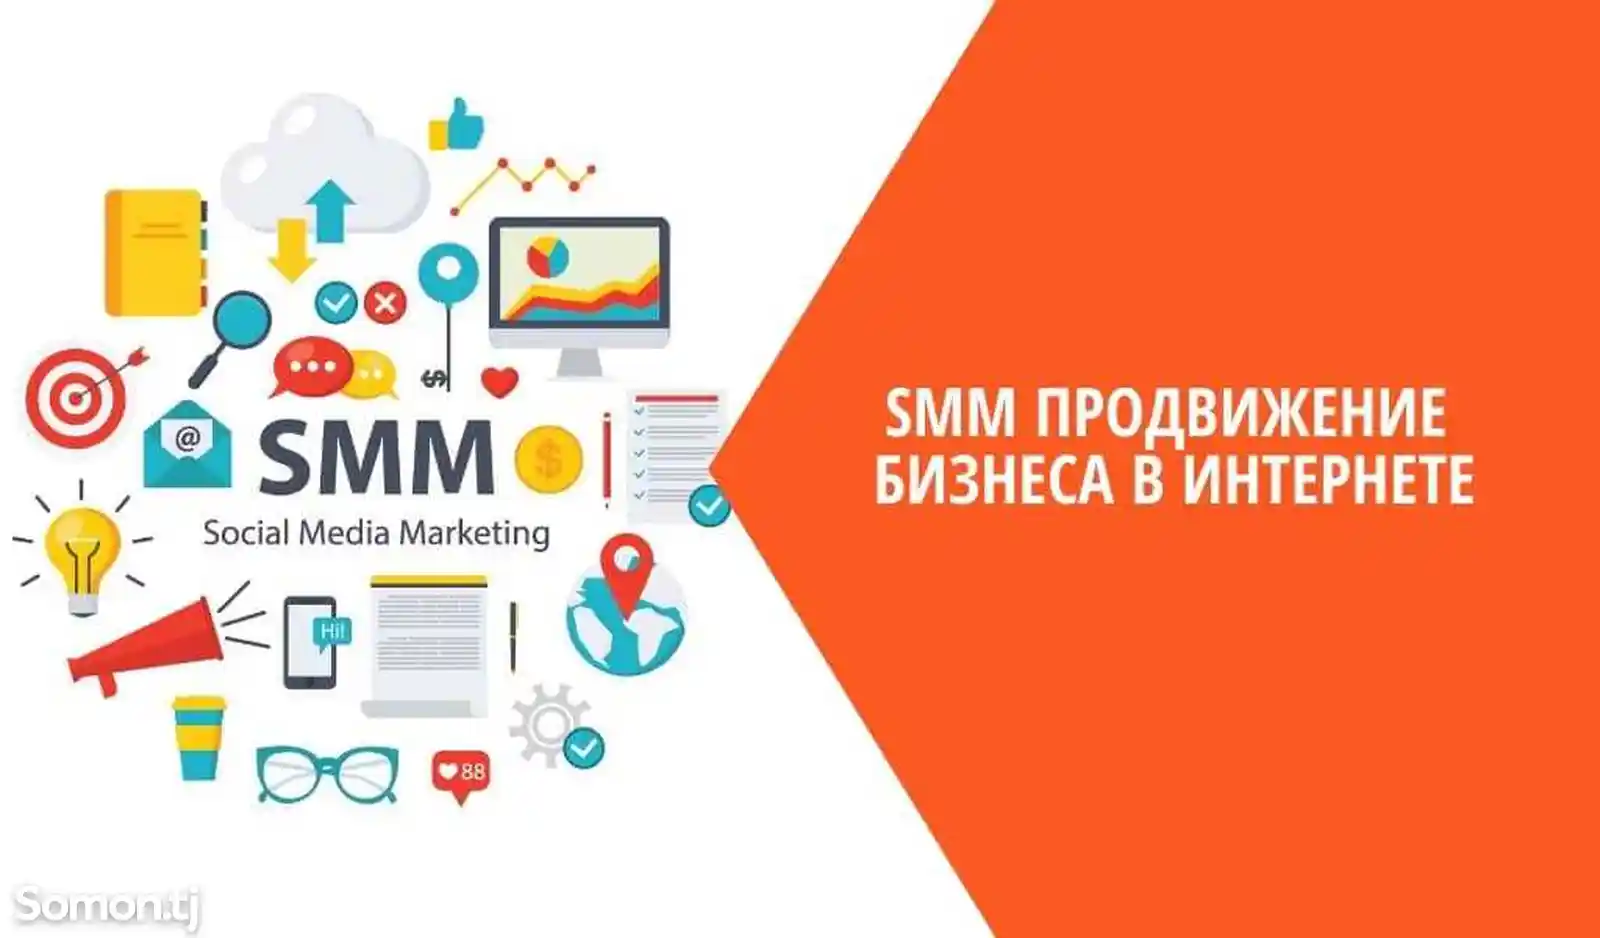 SMM Аналитика и отчетность в социальных сетях-2